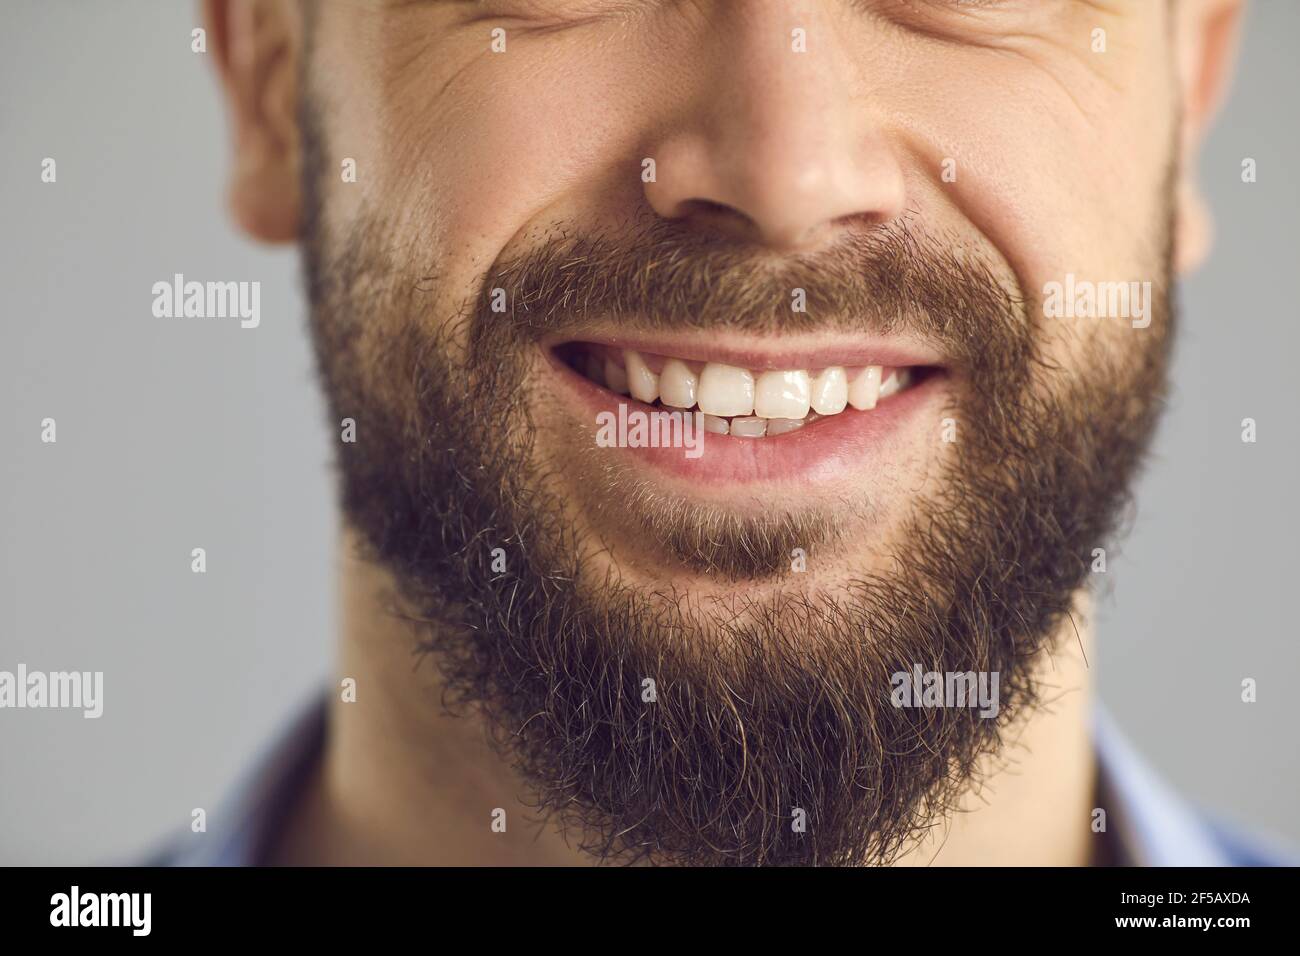 Gros plan en studio de la partie inférieure du visage de Happy jeune homme souriant avec une barbe brune Banque D'Images